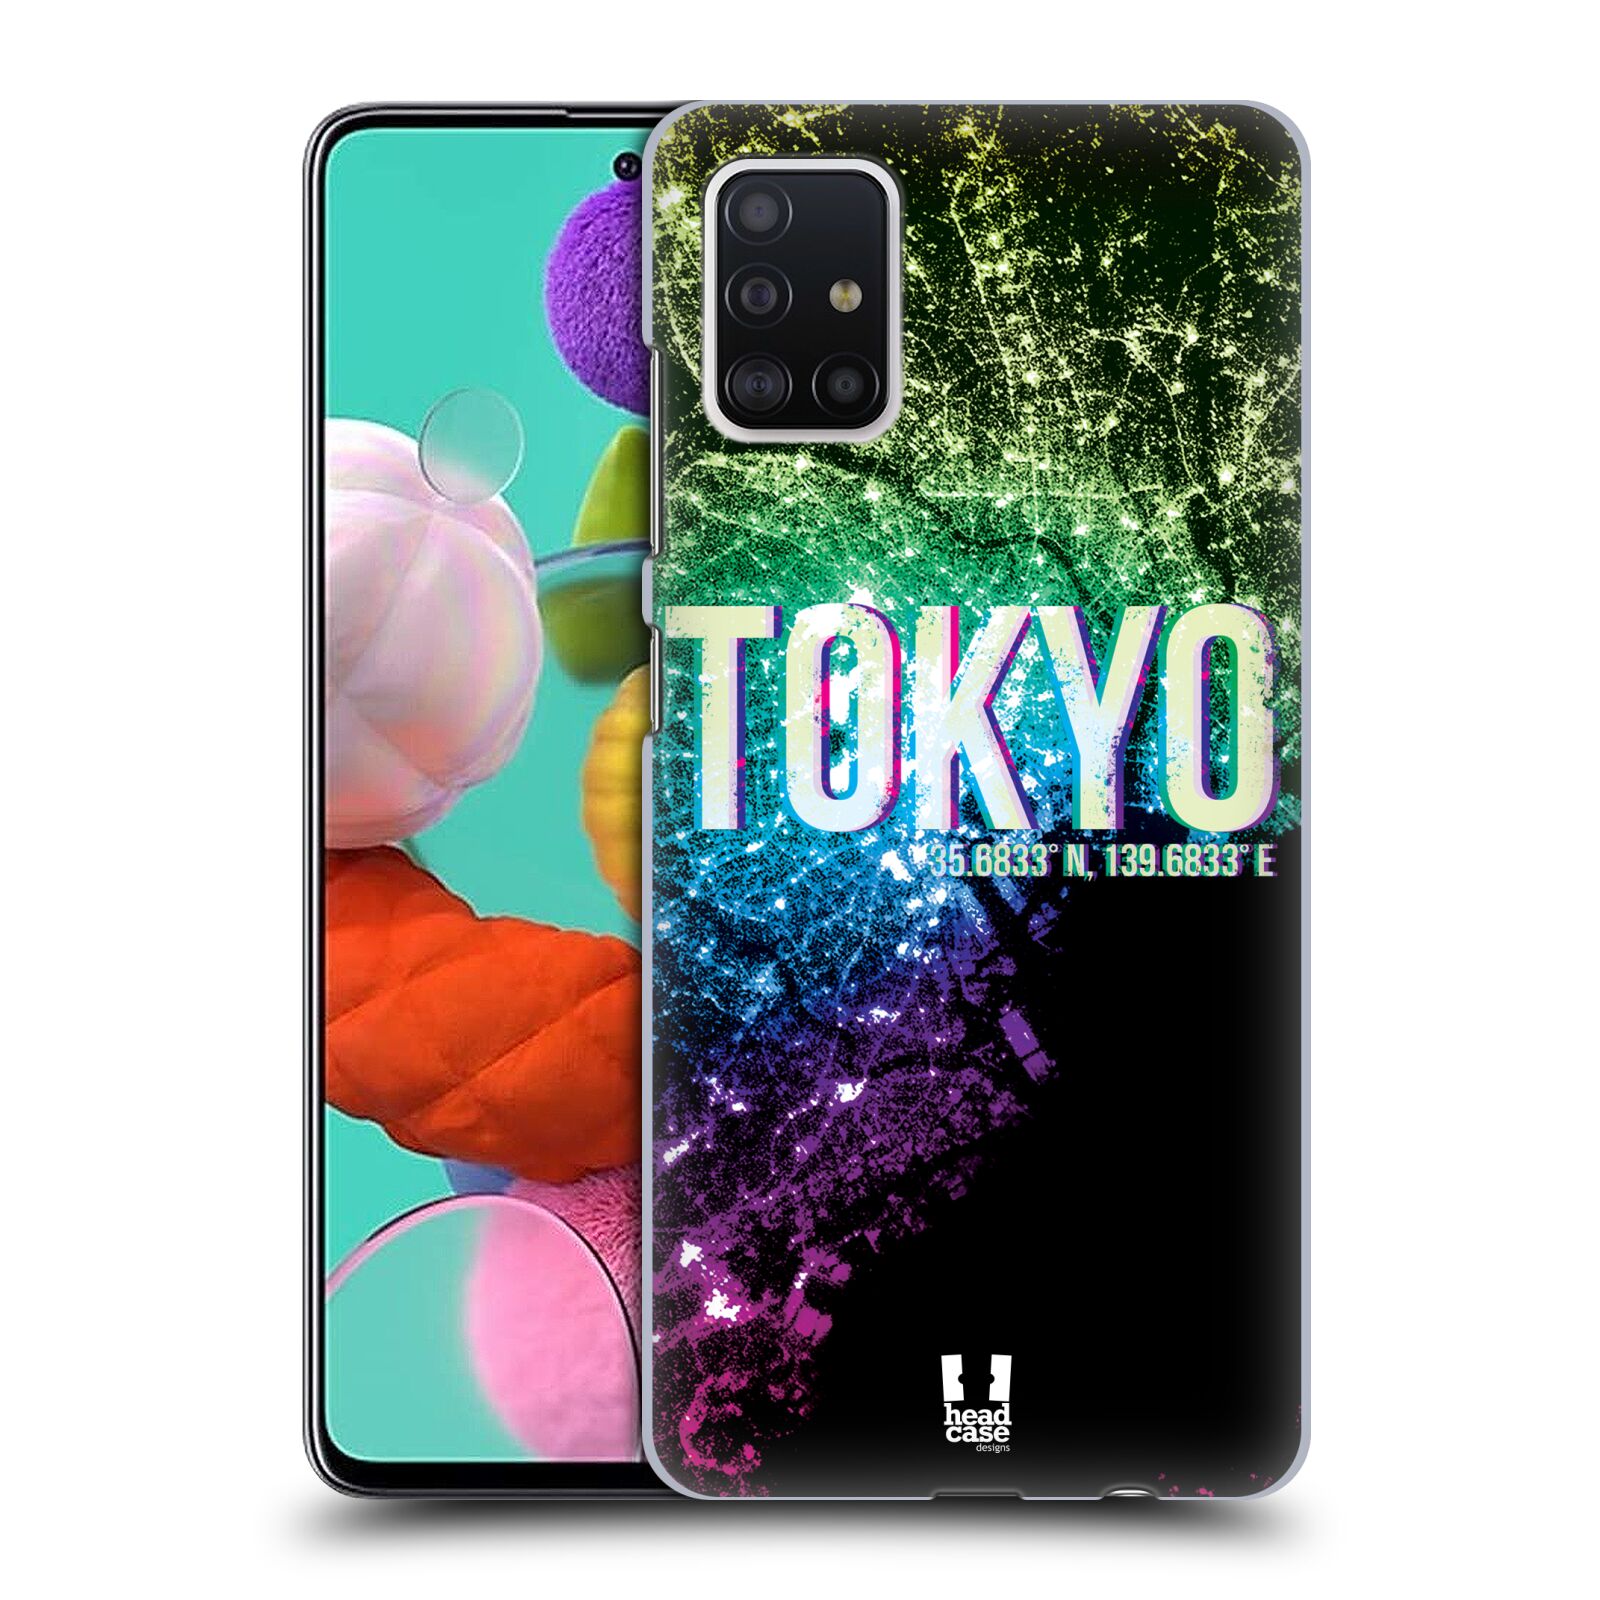 Pouzdro na mobil Samsung Galaxy A51 - HEAD CASE - vzor Světla známých měst, Satelitní snímky zelená a fialová JAPONSKO, TOKYO